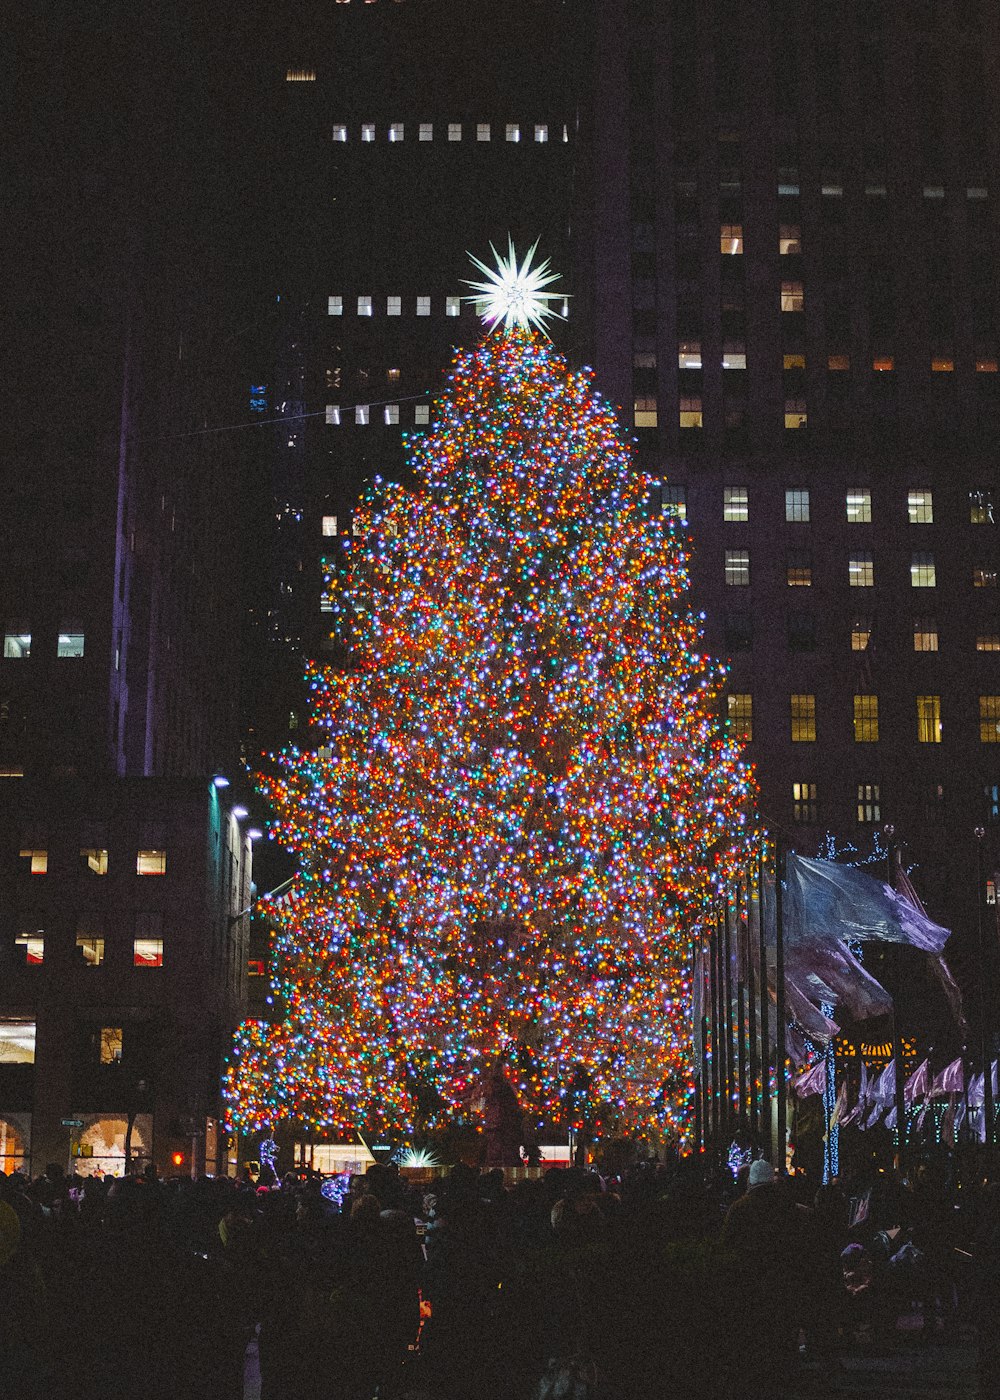 Không cần phải đi đâu xa, bạn có thể tải về những hình ảnh Giáng sinh New York miễn phí để tận hưởng không khí Tết thật sôi động và đầy màu sắc!